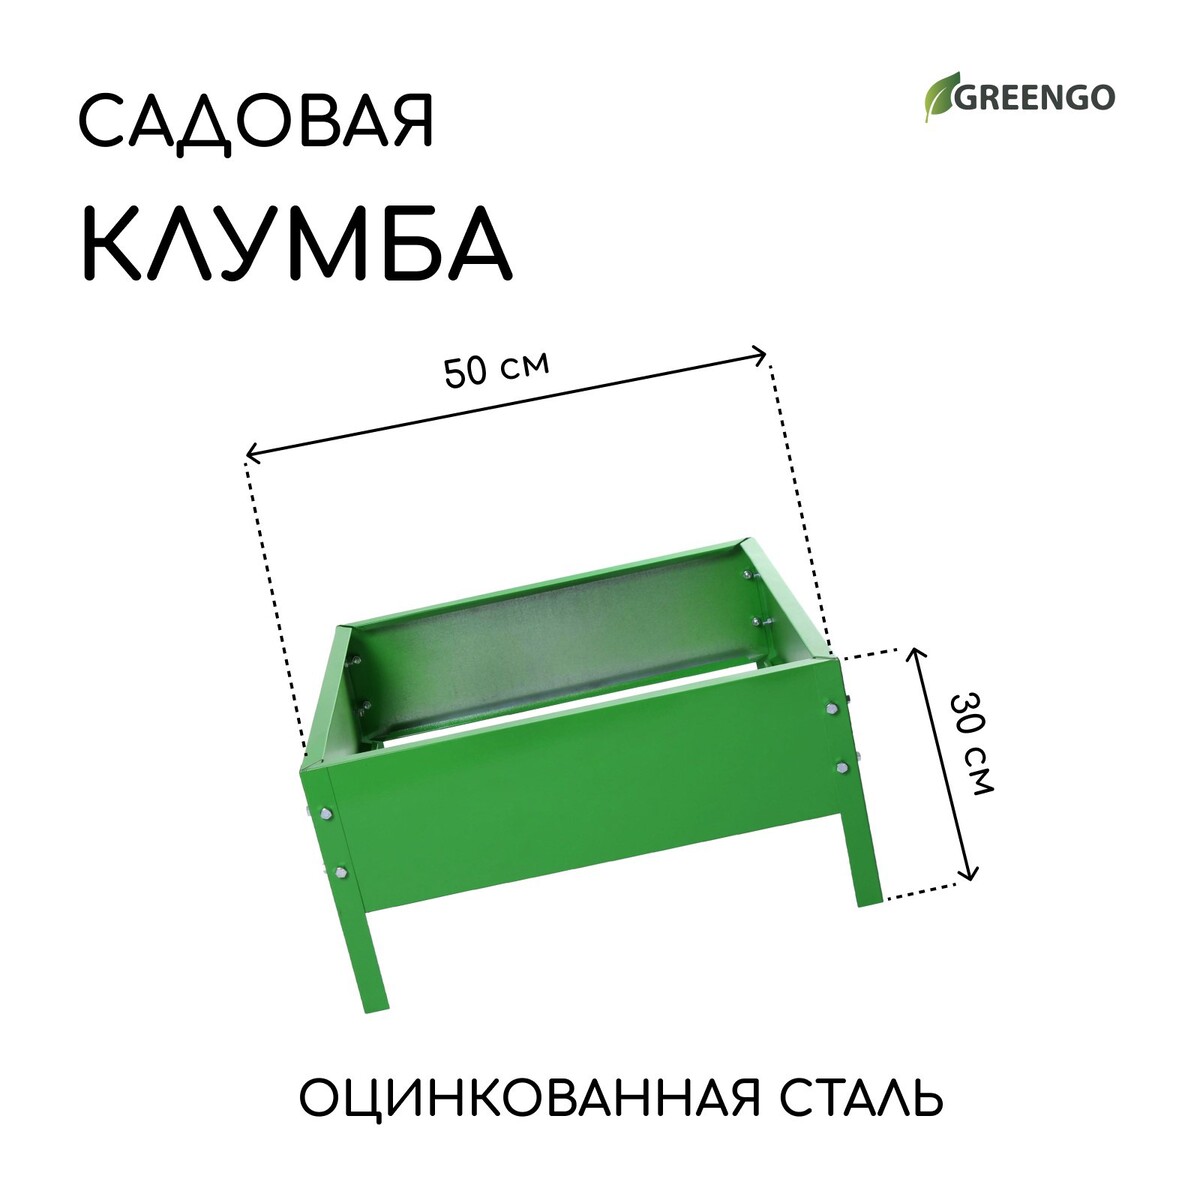 Клумба оцинкованная, 50 × 50 × 15 см, ярко-зеленая, greengo клумба оцинкованная 2 яруса d 60–80 см h 30 см ярко зеленая greengo